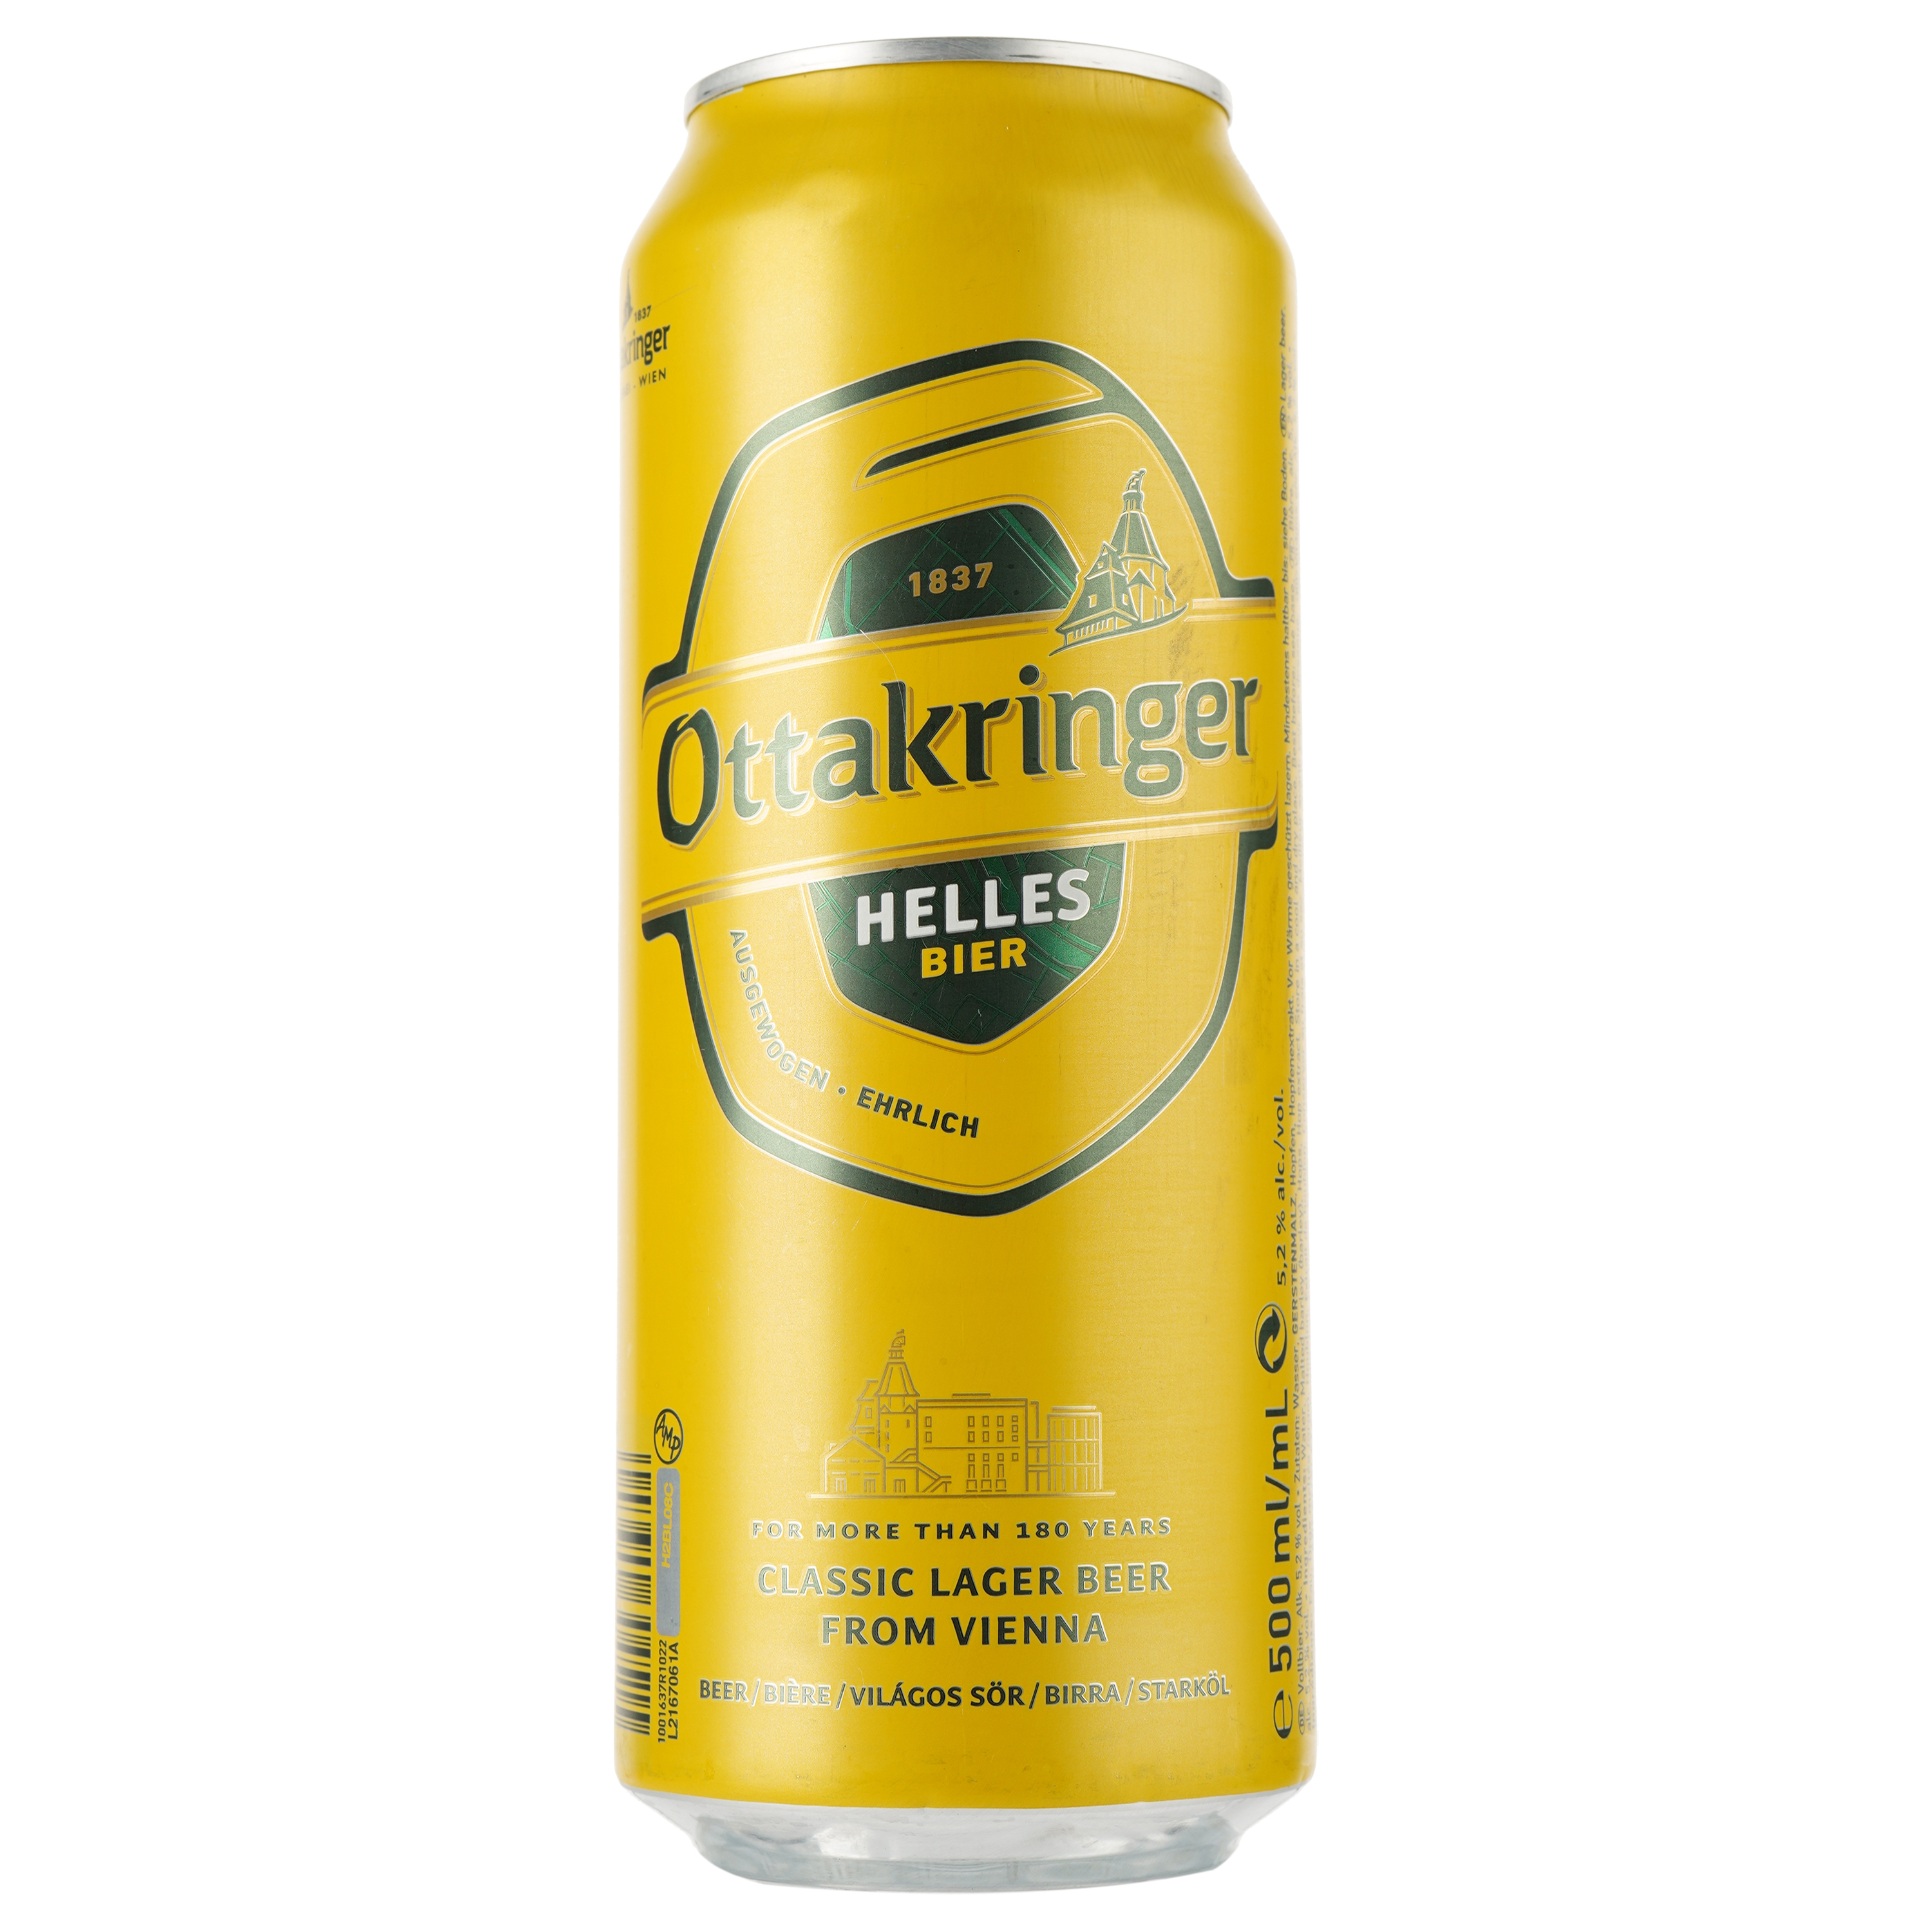 Пиво Ottakringer Helles, светлое, фильтрованное, 5,2%, ж/б, 0,5 л - фото 1